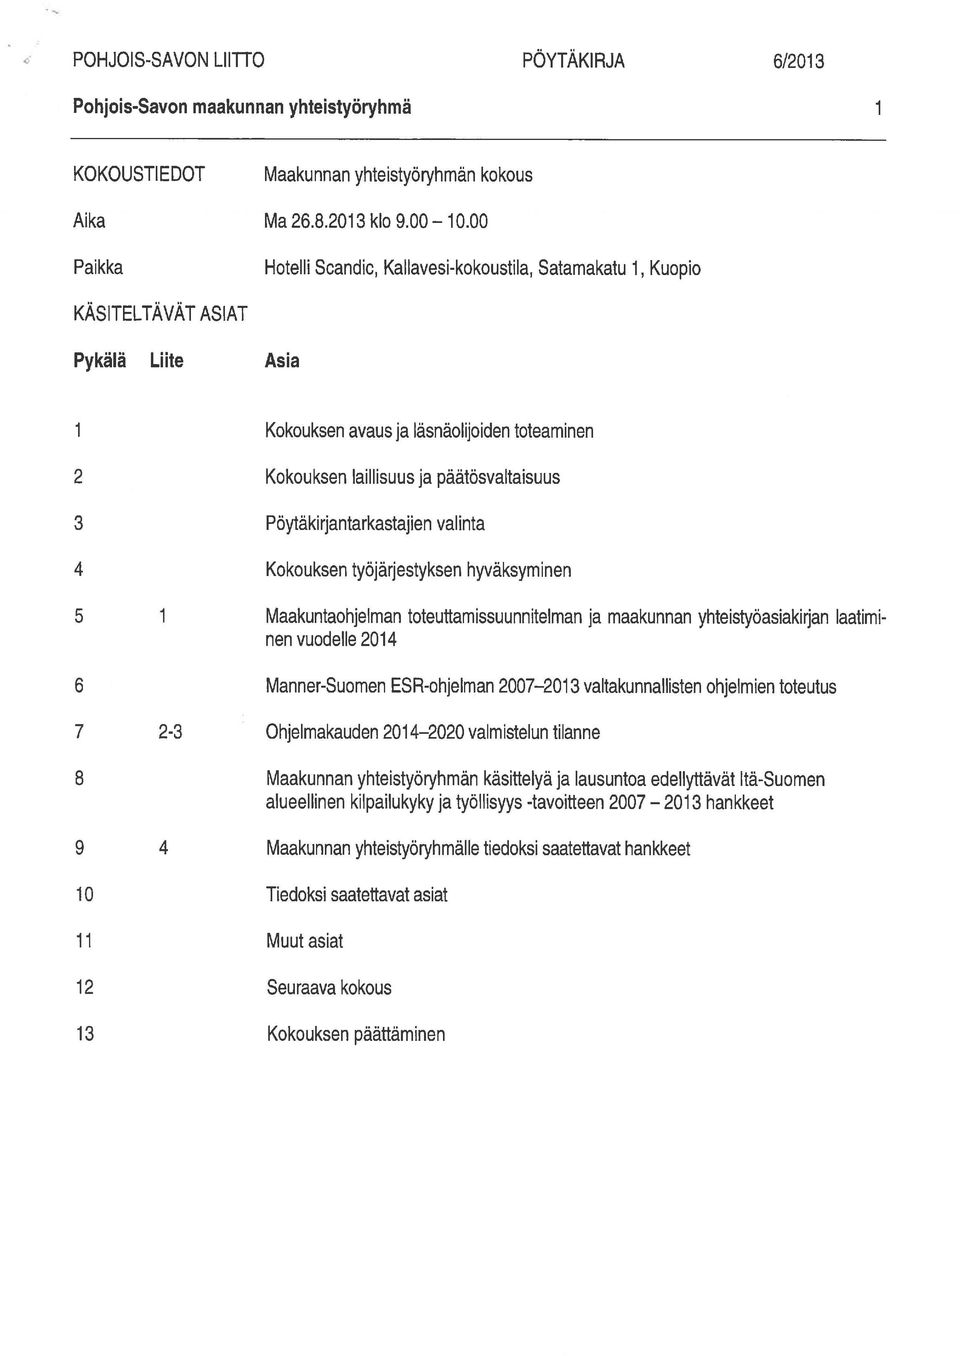 Pöytäkirjantarkastajien valinta 4 Kokouksen työjärjestyksen hyväksyminen 5 1 Maakuntaohjelman toteuffamissuunnitelman ja maakunnan yhteistyöasiakirjan laatimi nen vuodelle 2014 6 Manner-Suomen